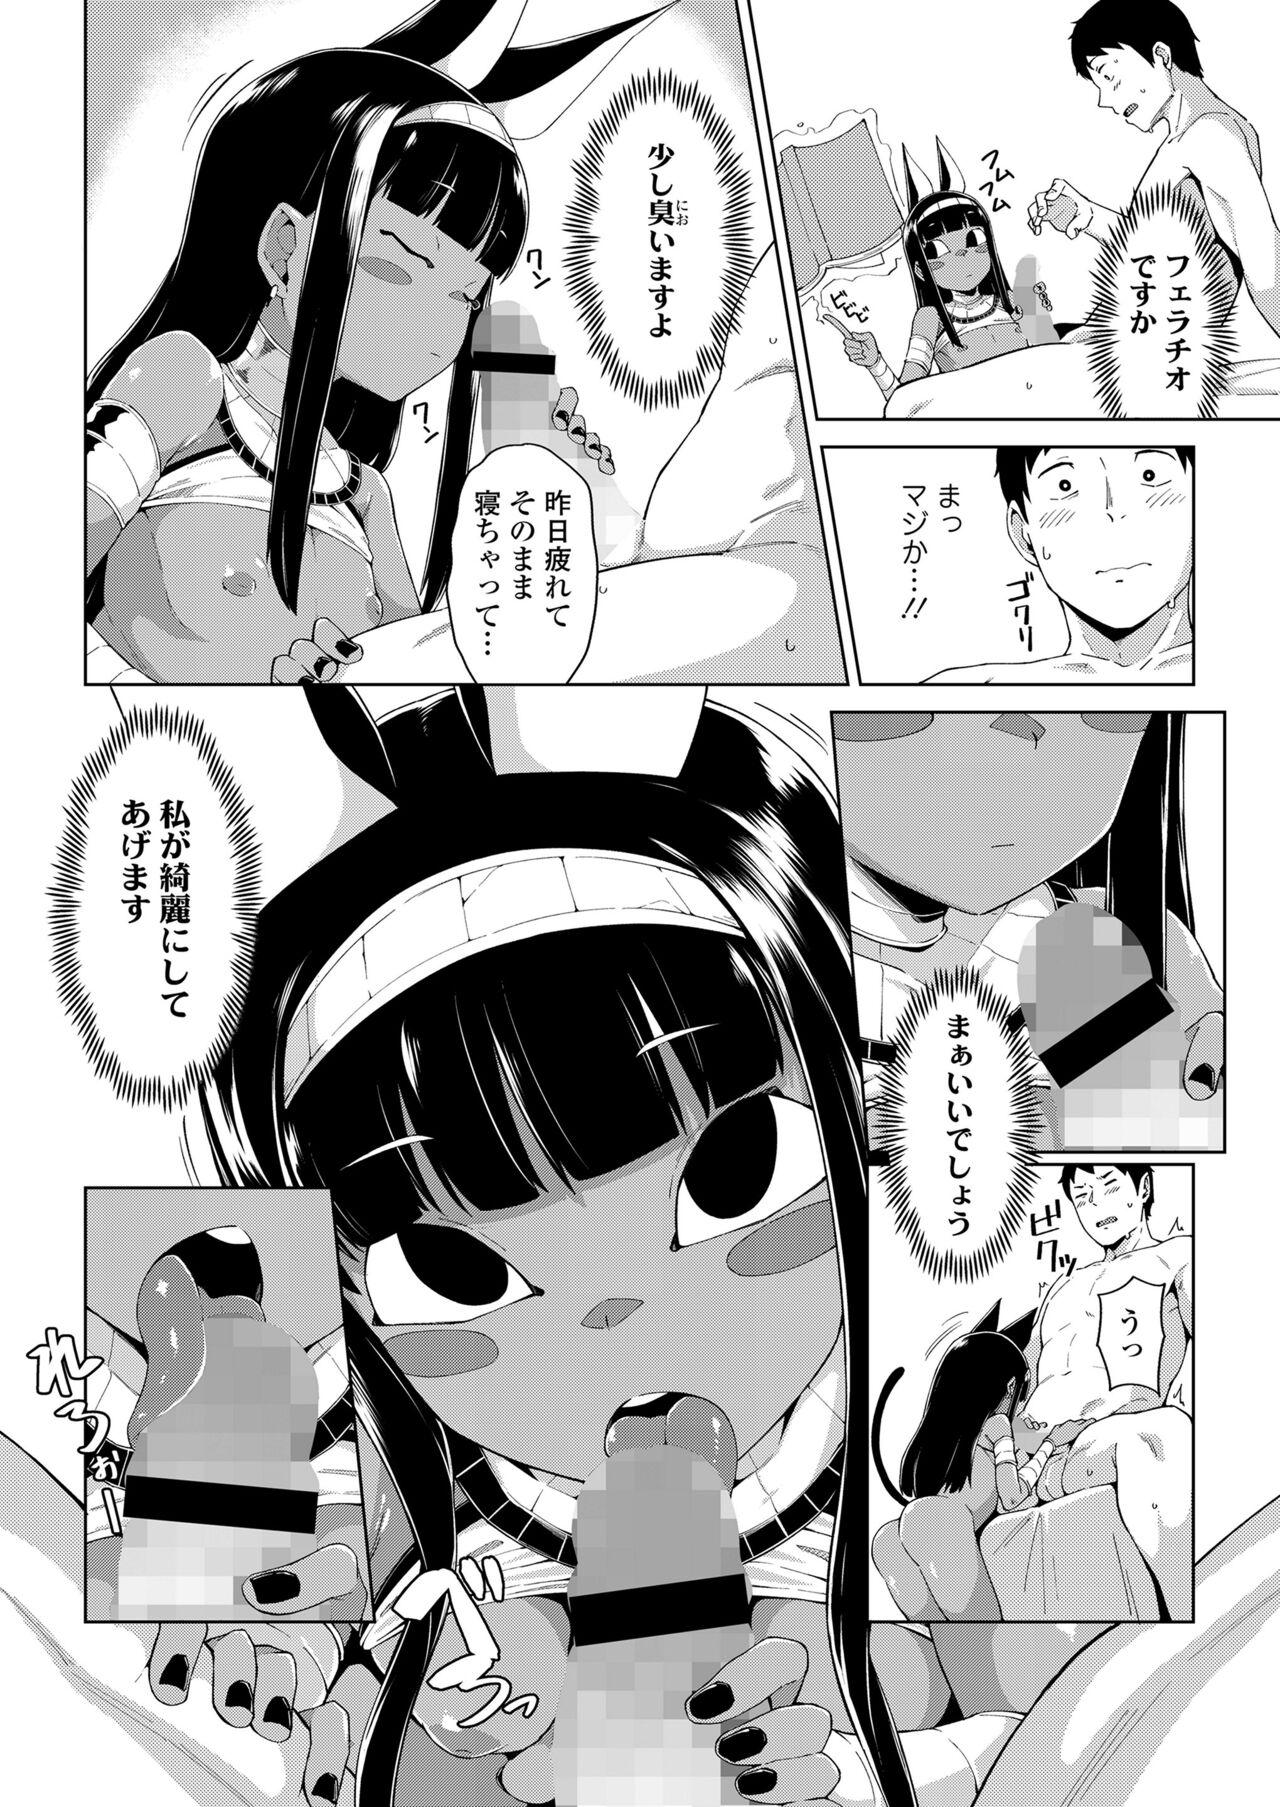 Leaked Towako Oboro Emaki 13 Culos - Page 10